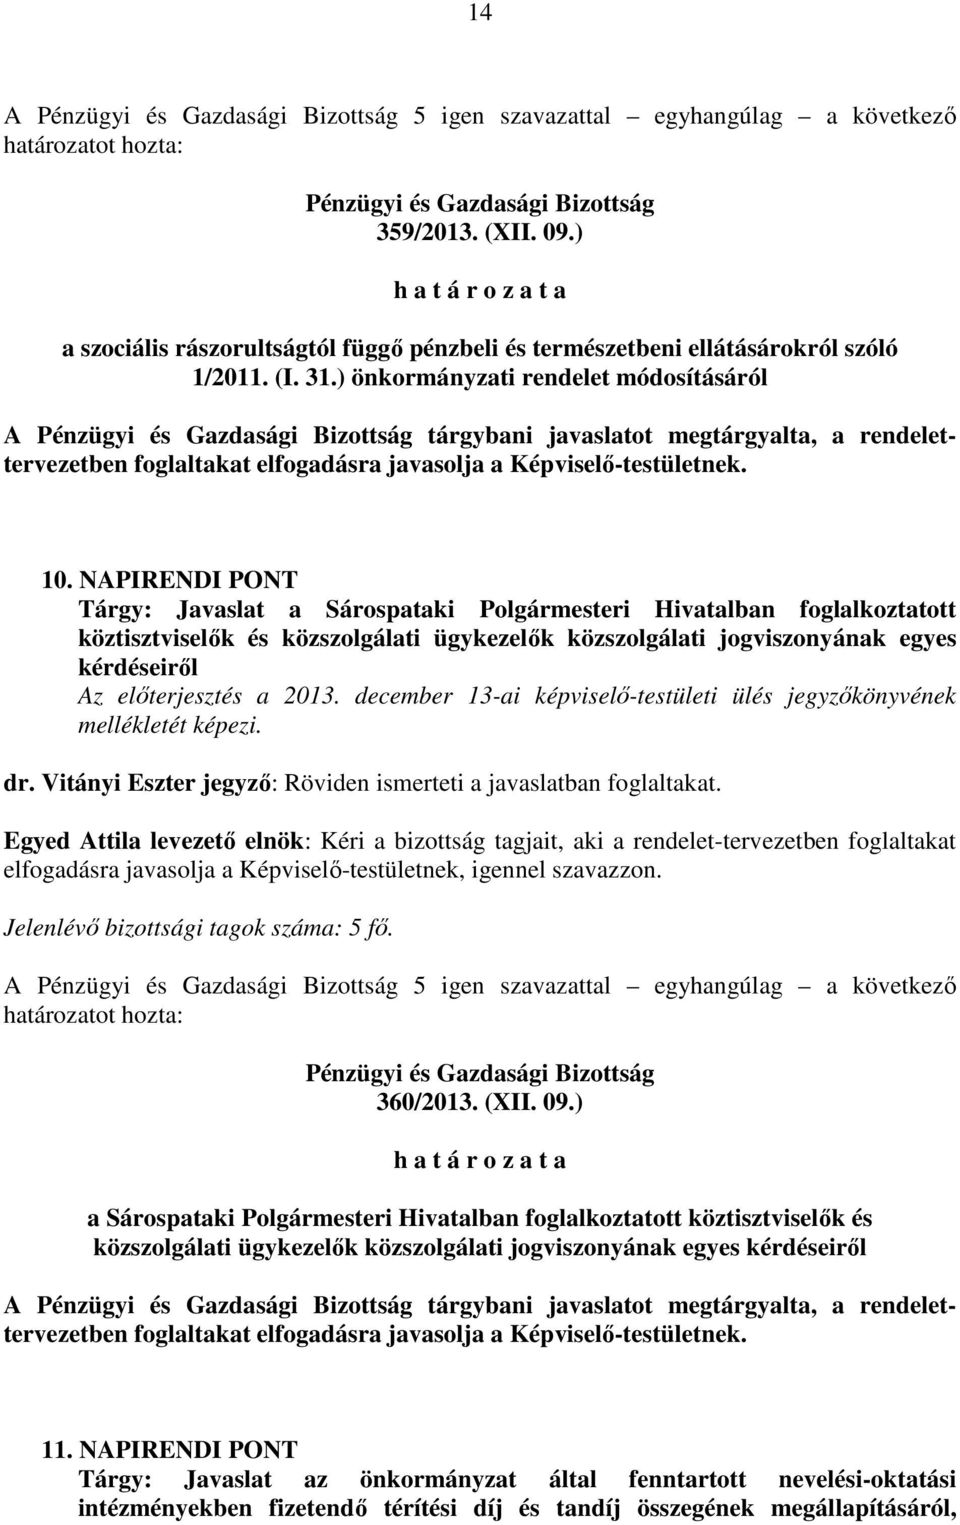 NAPIRENDI PONT Tárgy: Javaslat a Sárospataki Polgármesteri Hivatalban foglalkoztatott köztisztviselők és közszolgálati ügykezelők közszolgálati jogviszonyának egyes kérdéseiről Az előterjesztés a